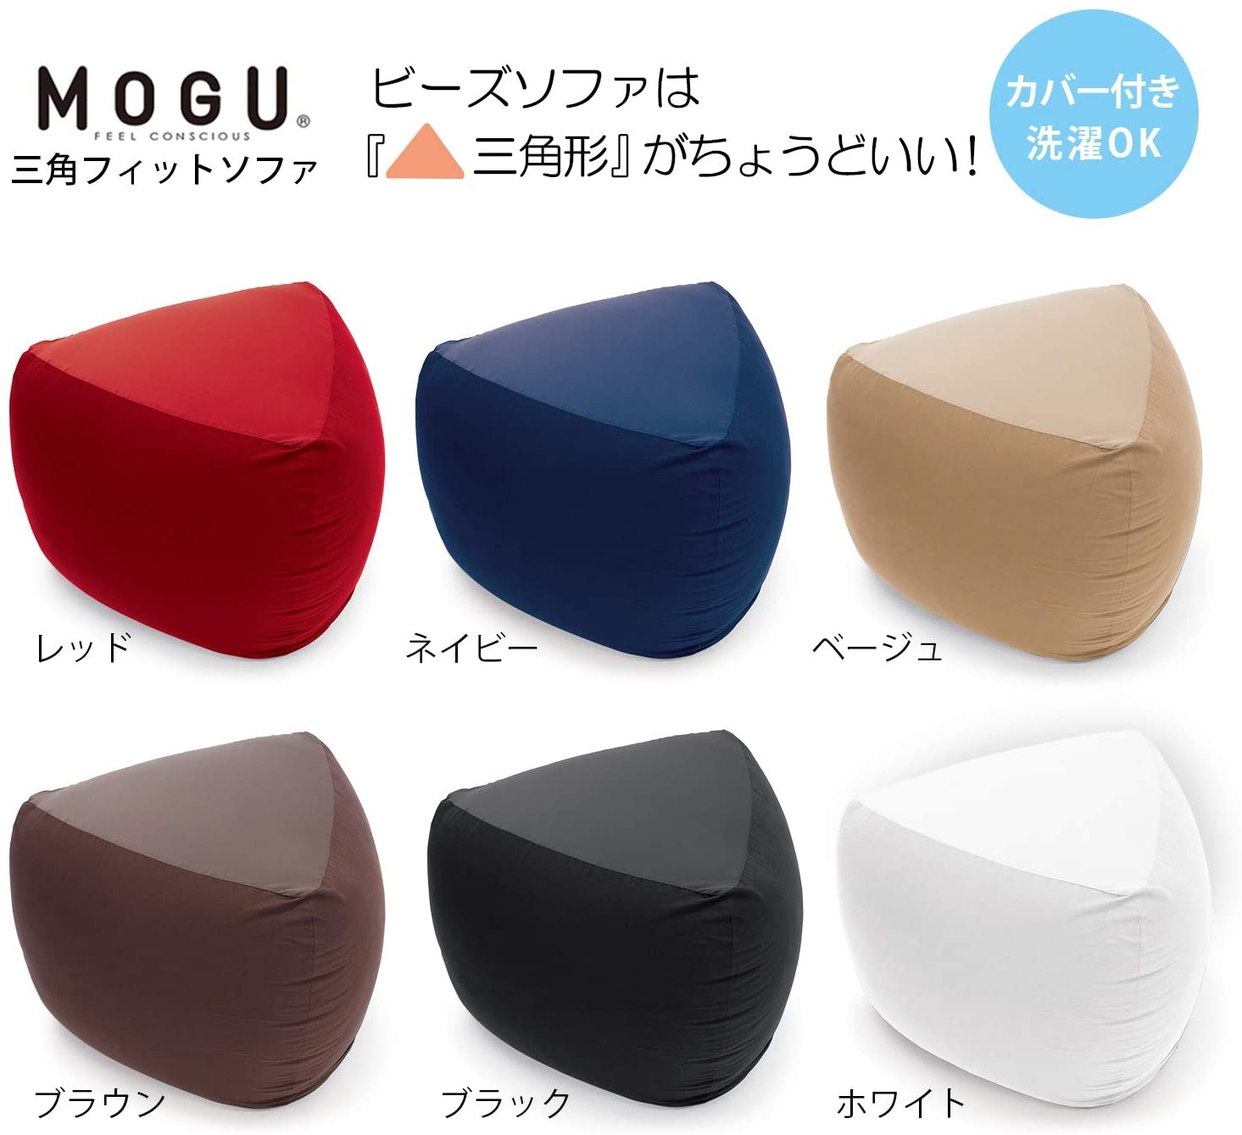 MOGU(モグ) 三角フィットソファの商品画像7 